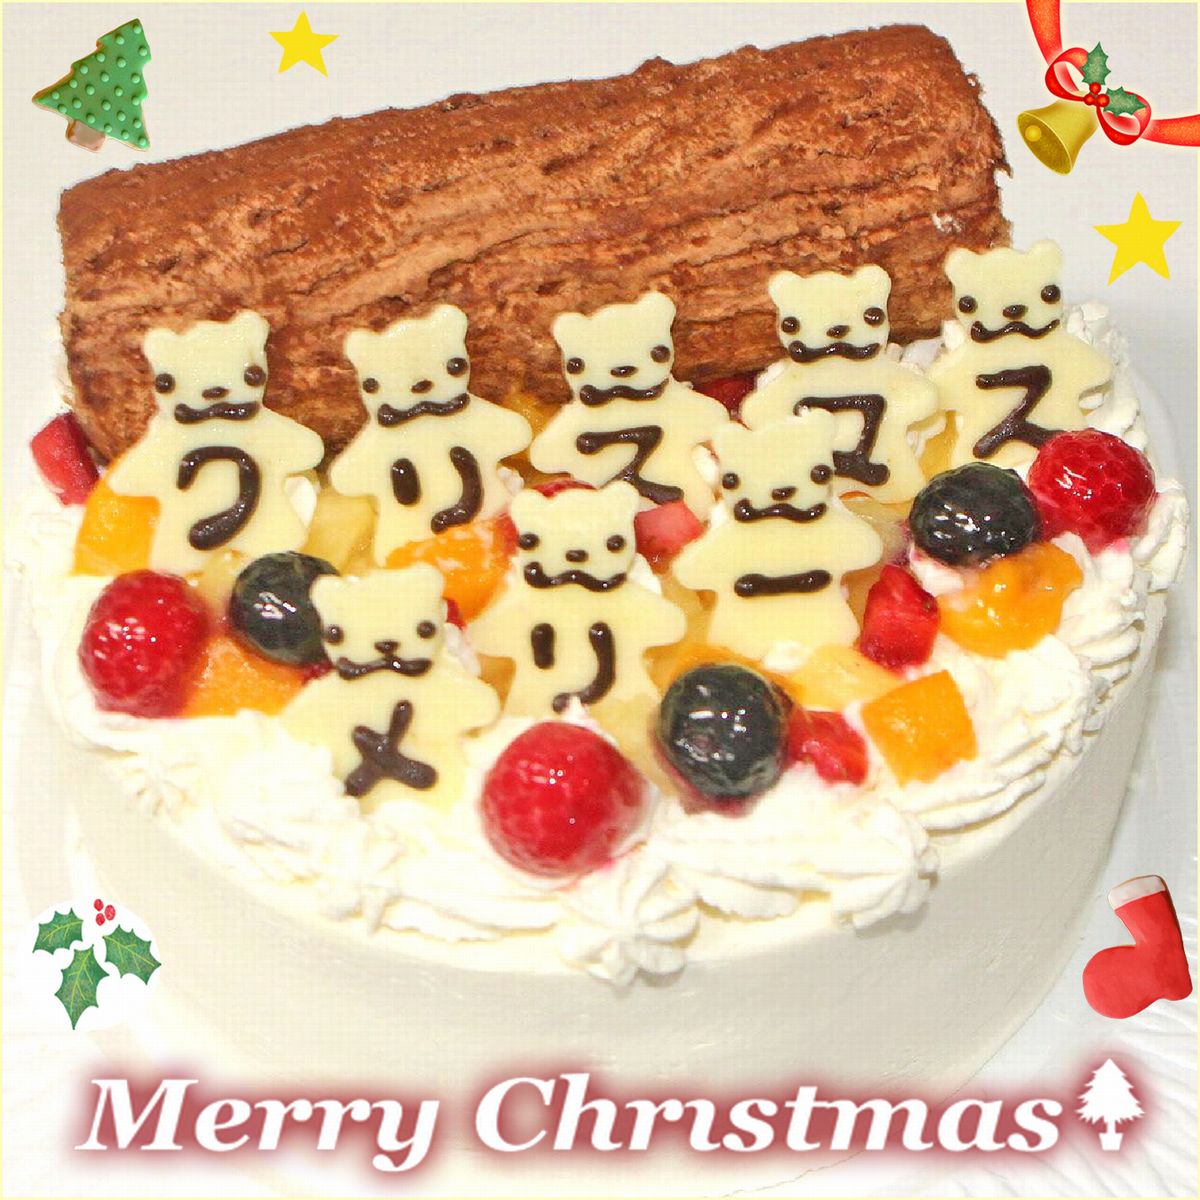 クリスマスケーキ2020 こぐまたちのメリークリスマス6号 送料込み クリスマス人気 クリスマスデコレーションケーキ かわいいケーキ キャラクターケーキ 甘さ控えめ クリスマスパーティー